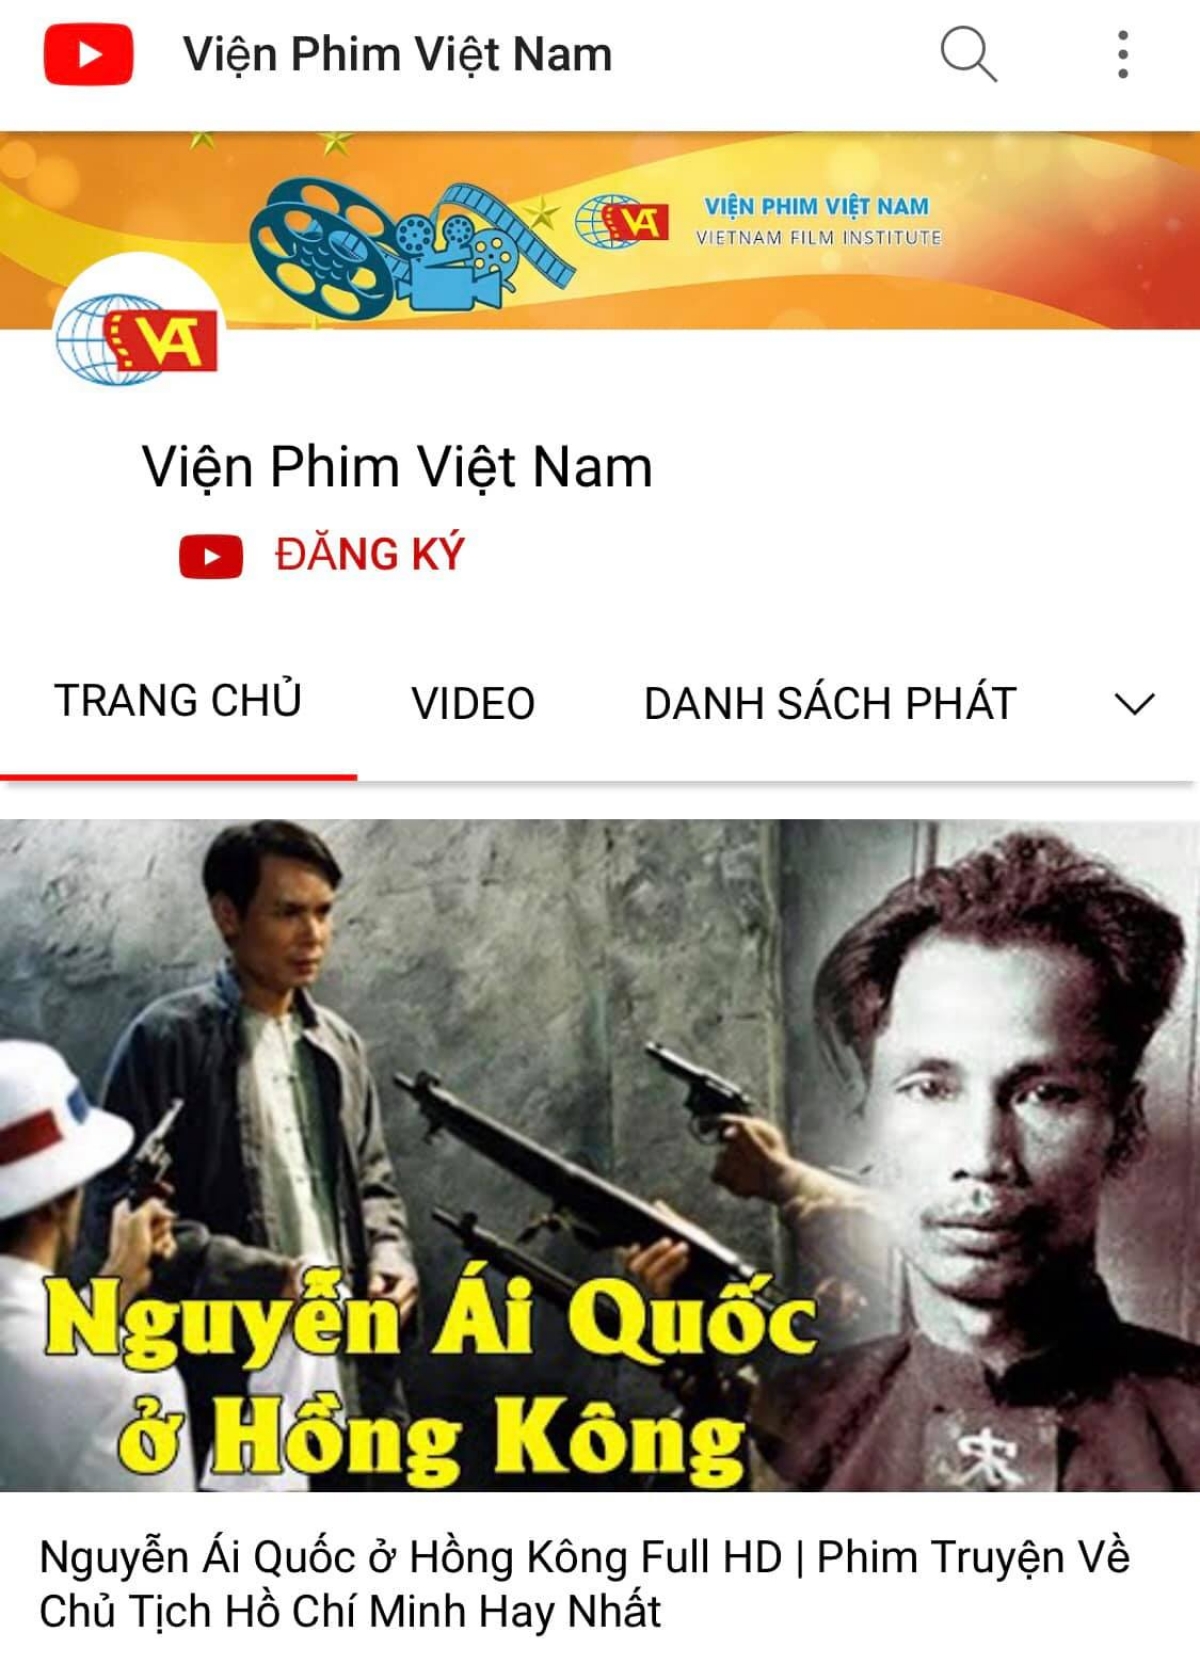 Kênh Youtube của Viện phim Việt Nam đang chiếu những bộ phim có giá trị của điện ảnh Việt Nam do Nhà nước đặt hàng